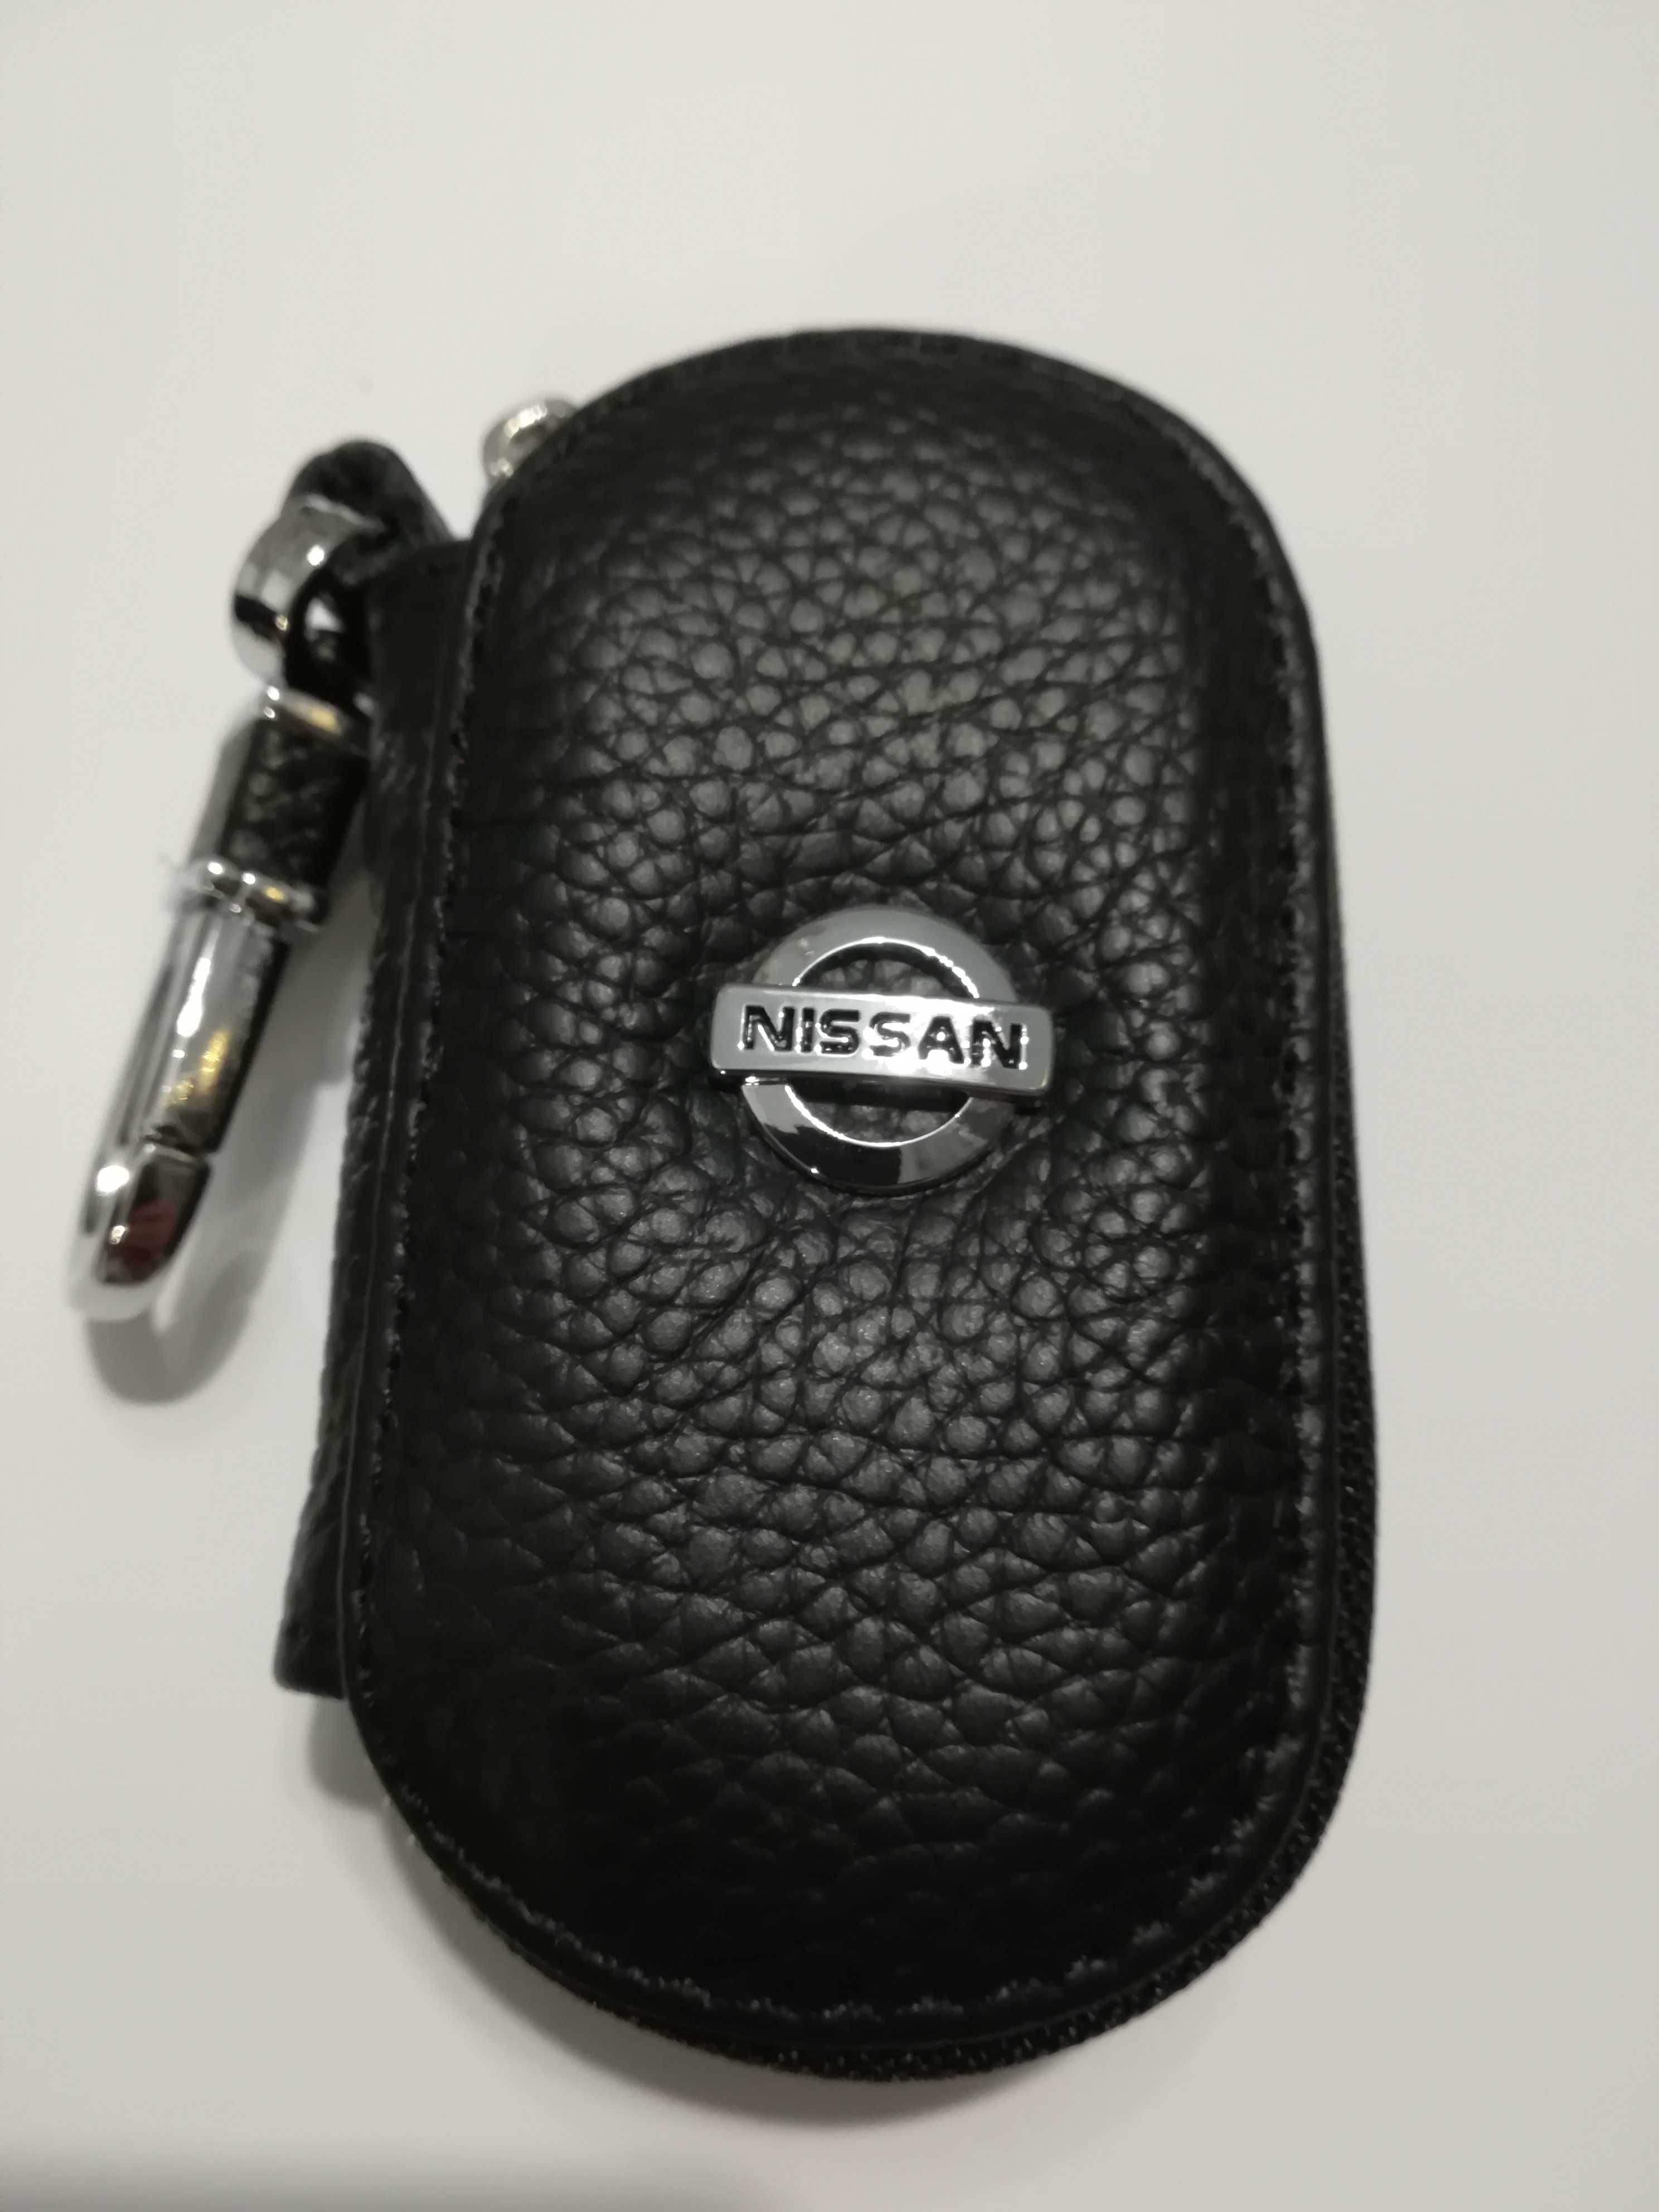 Nissan etui pokrowiec na klucze breloczek brelok skóra prezent